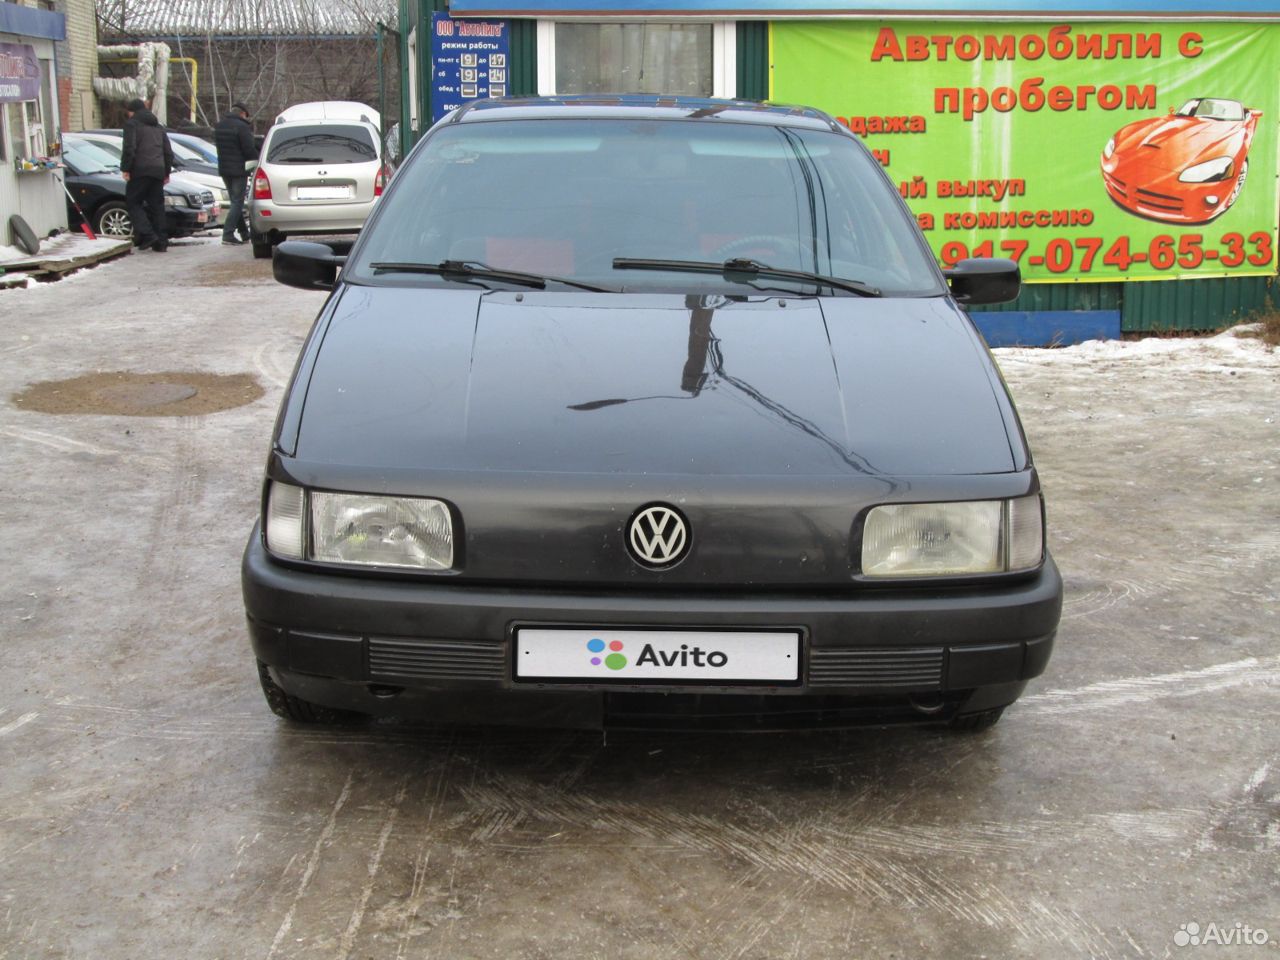 Volkswagen Passat, 1991 89170746533 купить 1